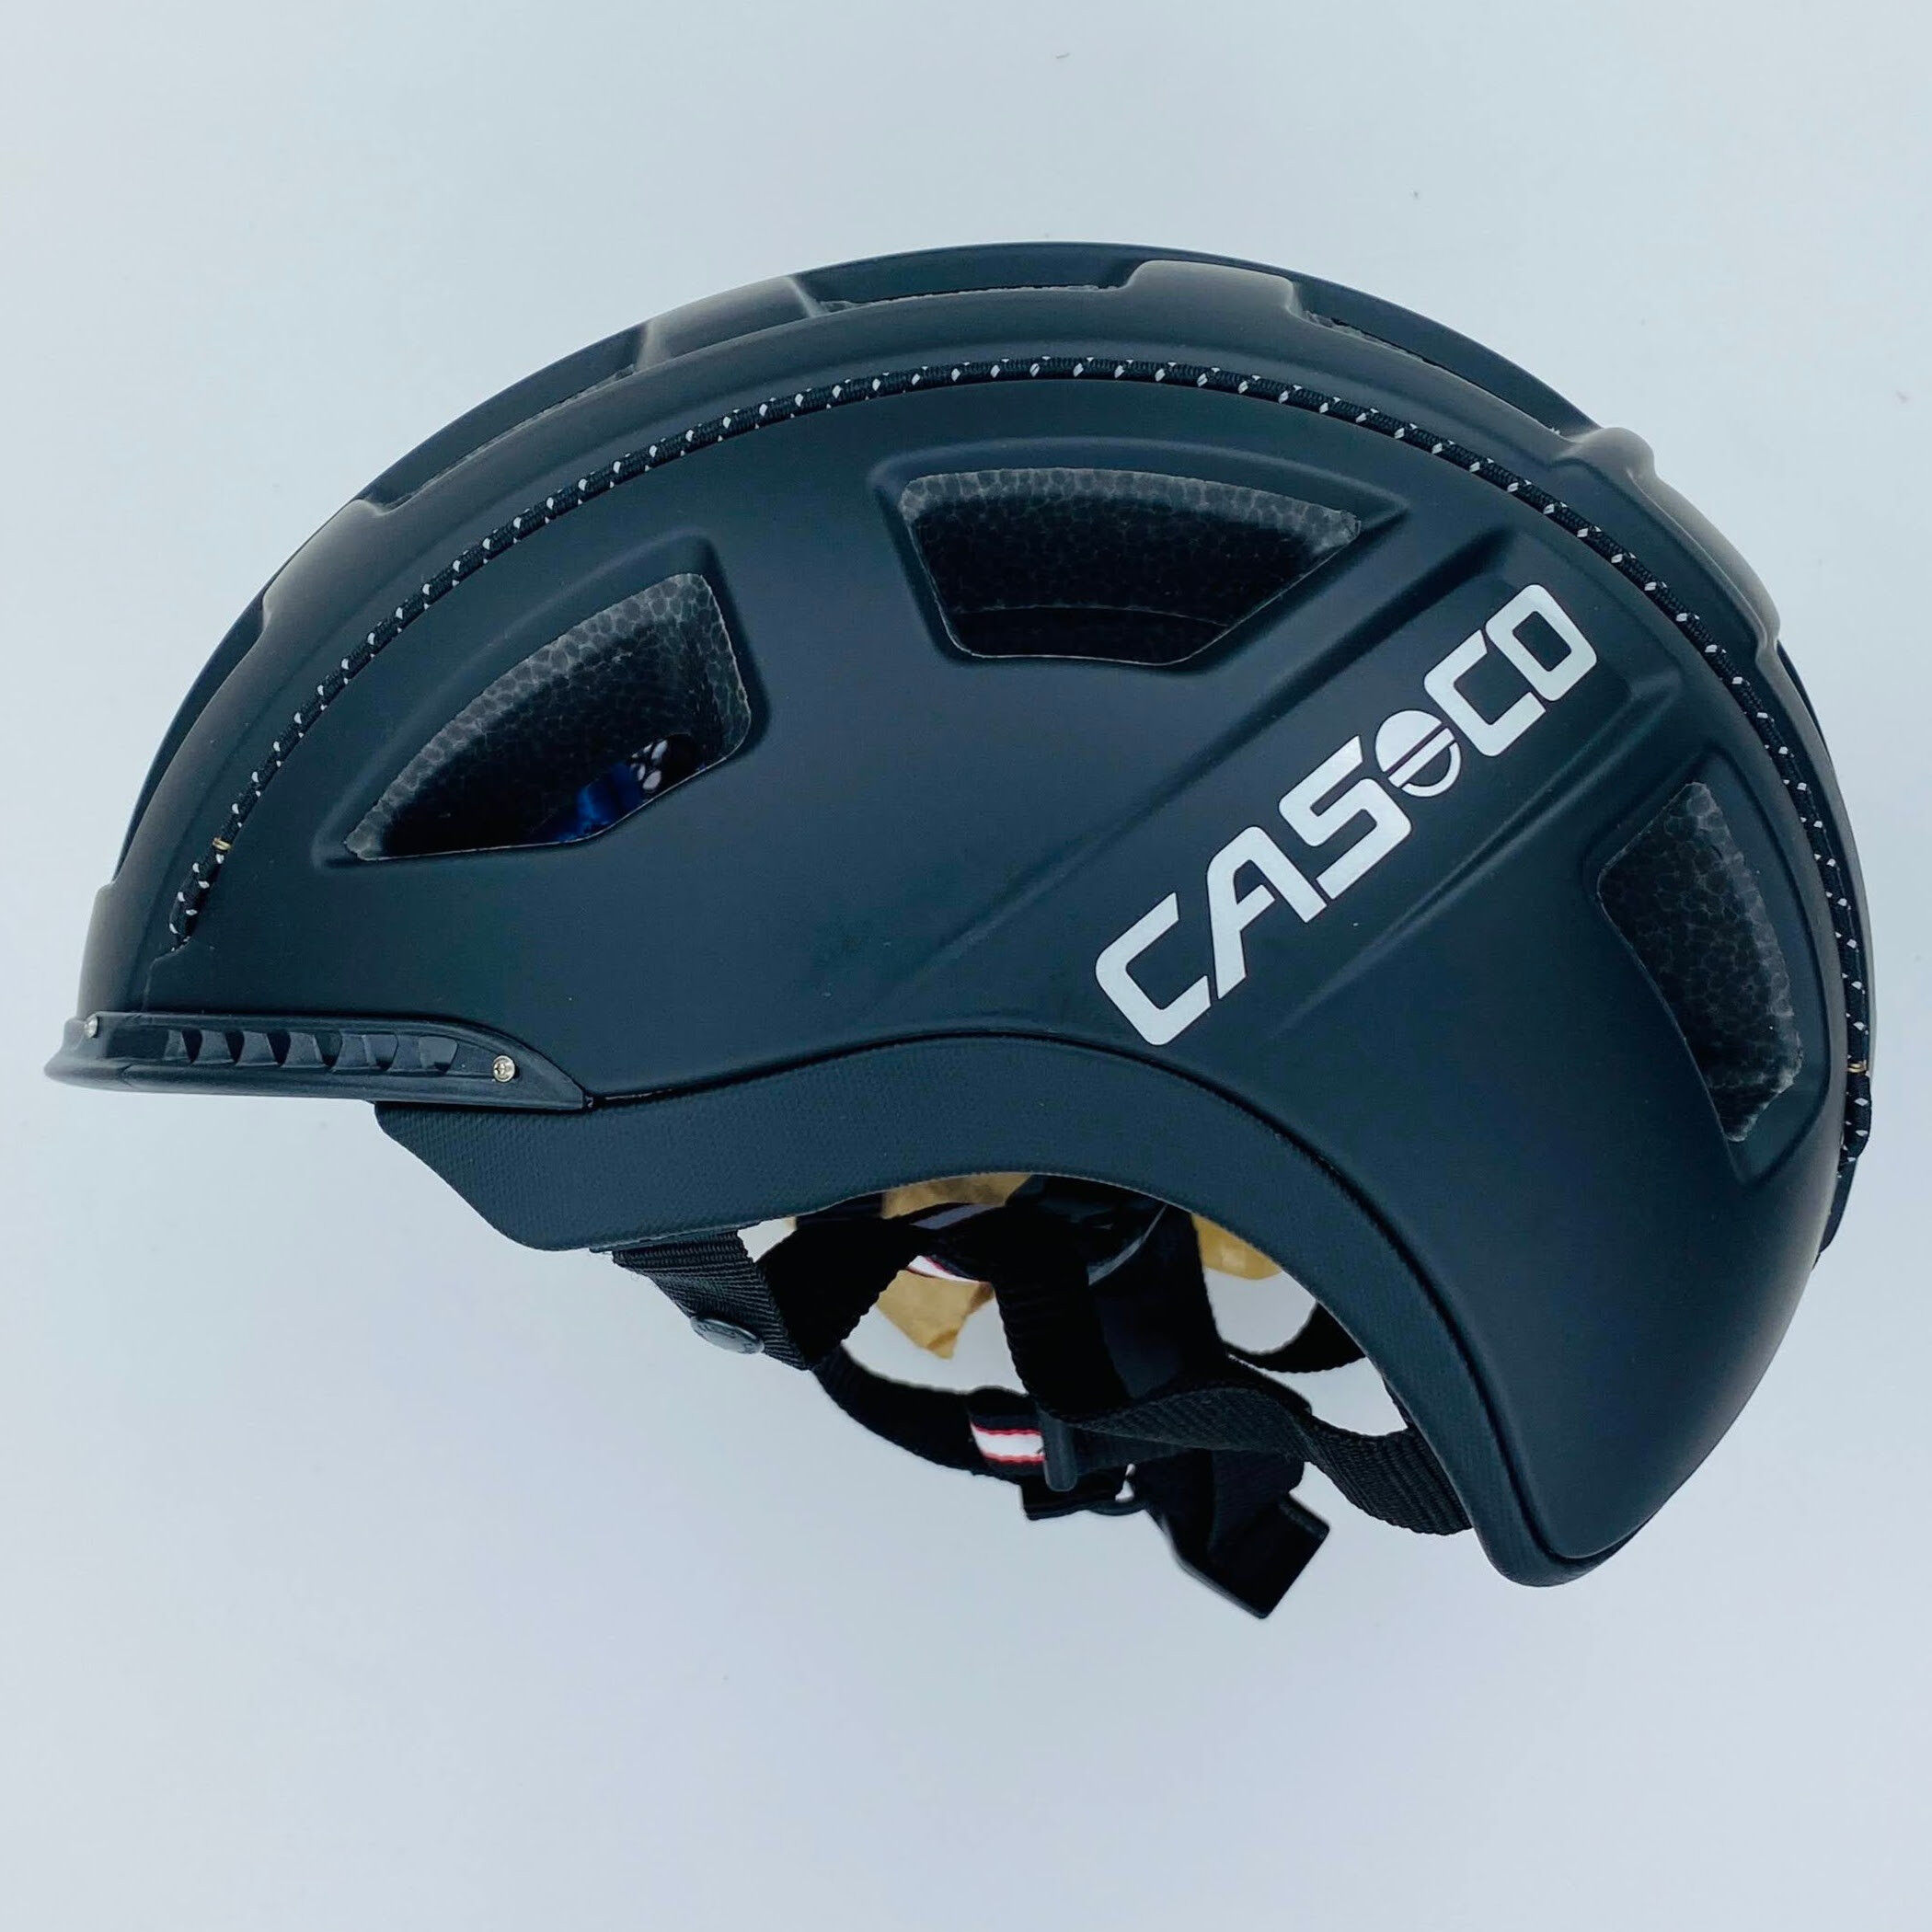 Casco E.motion - Casco per bici di seconda mano - Nero - 52-56 cm | Hardloop